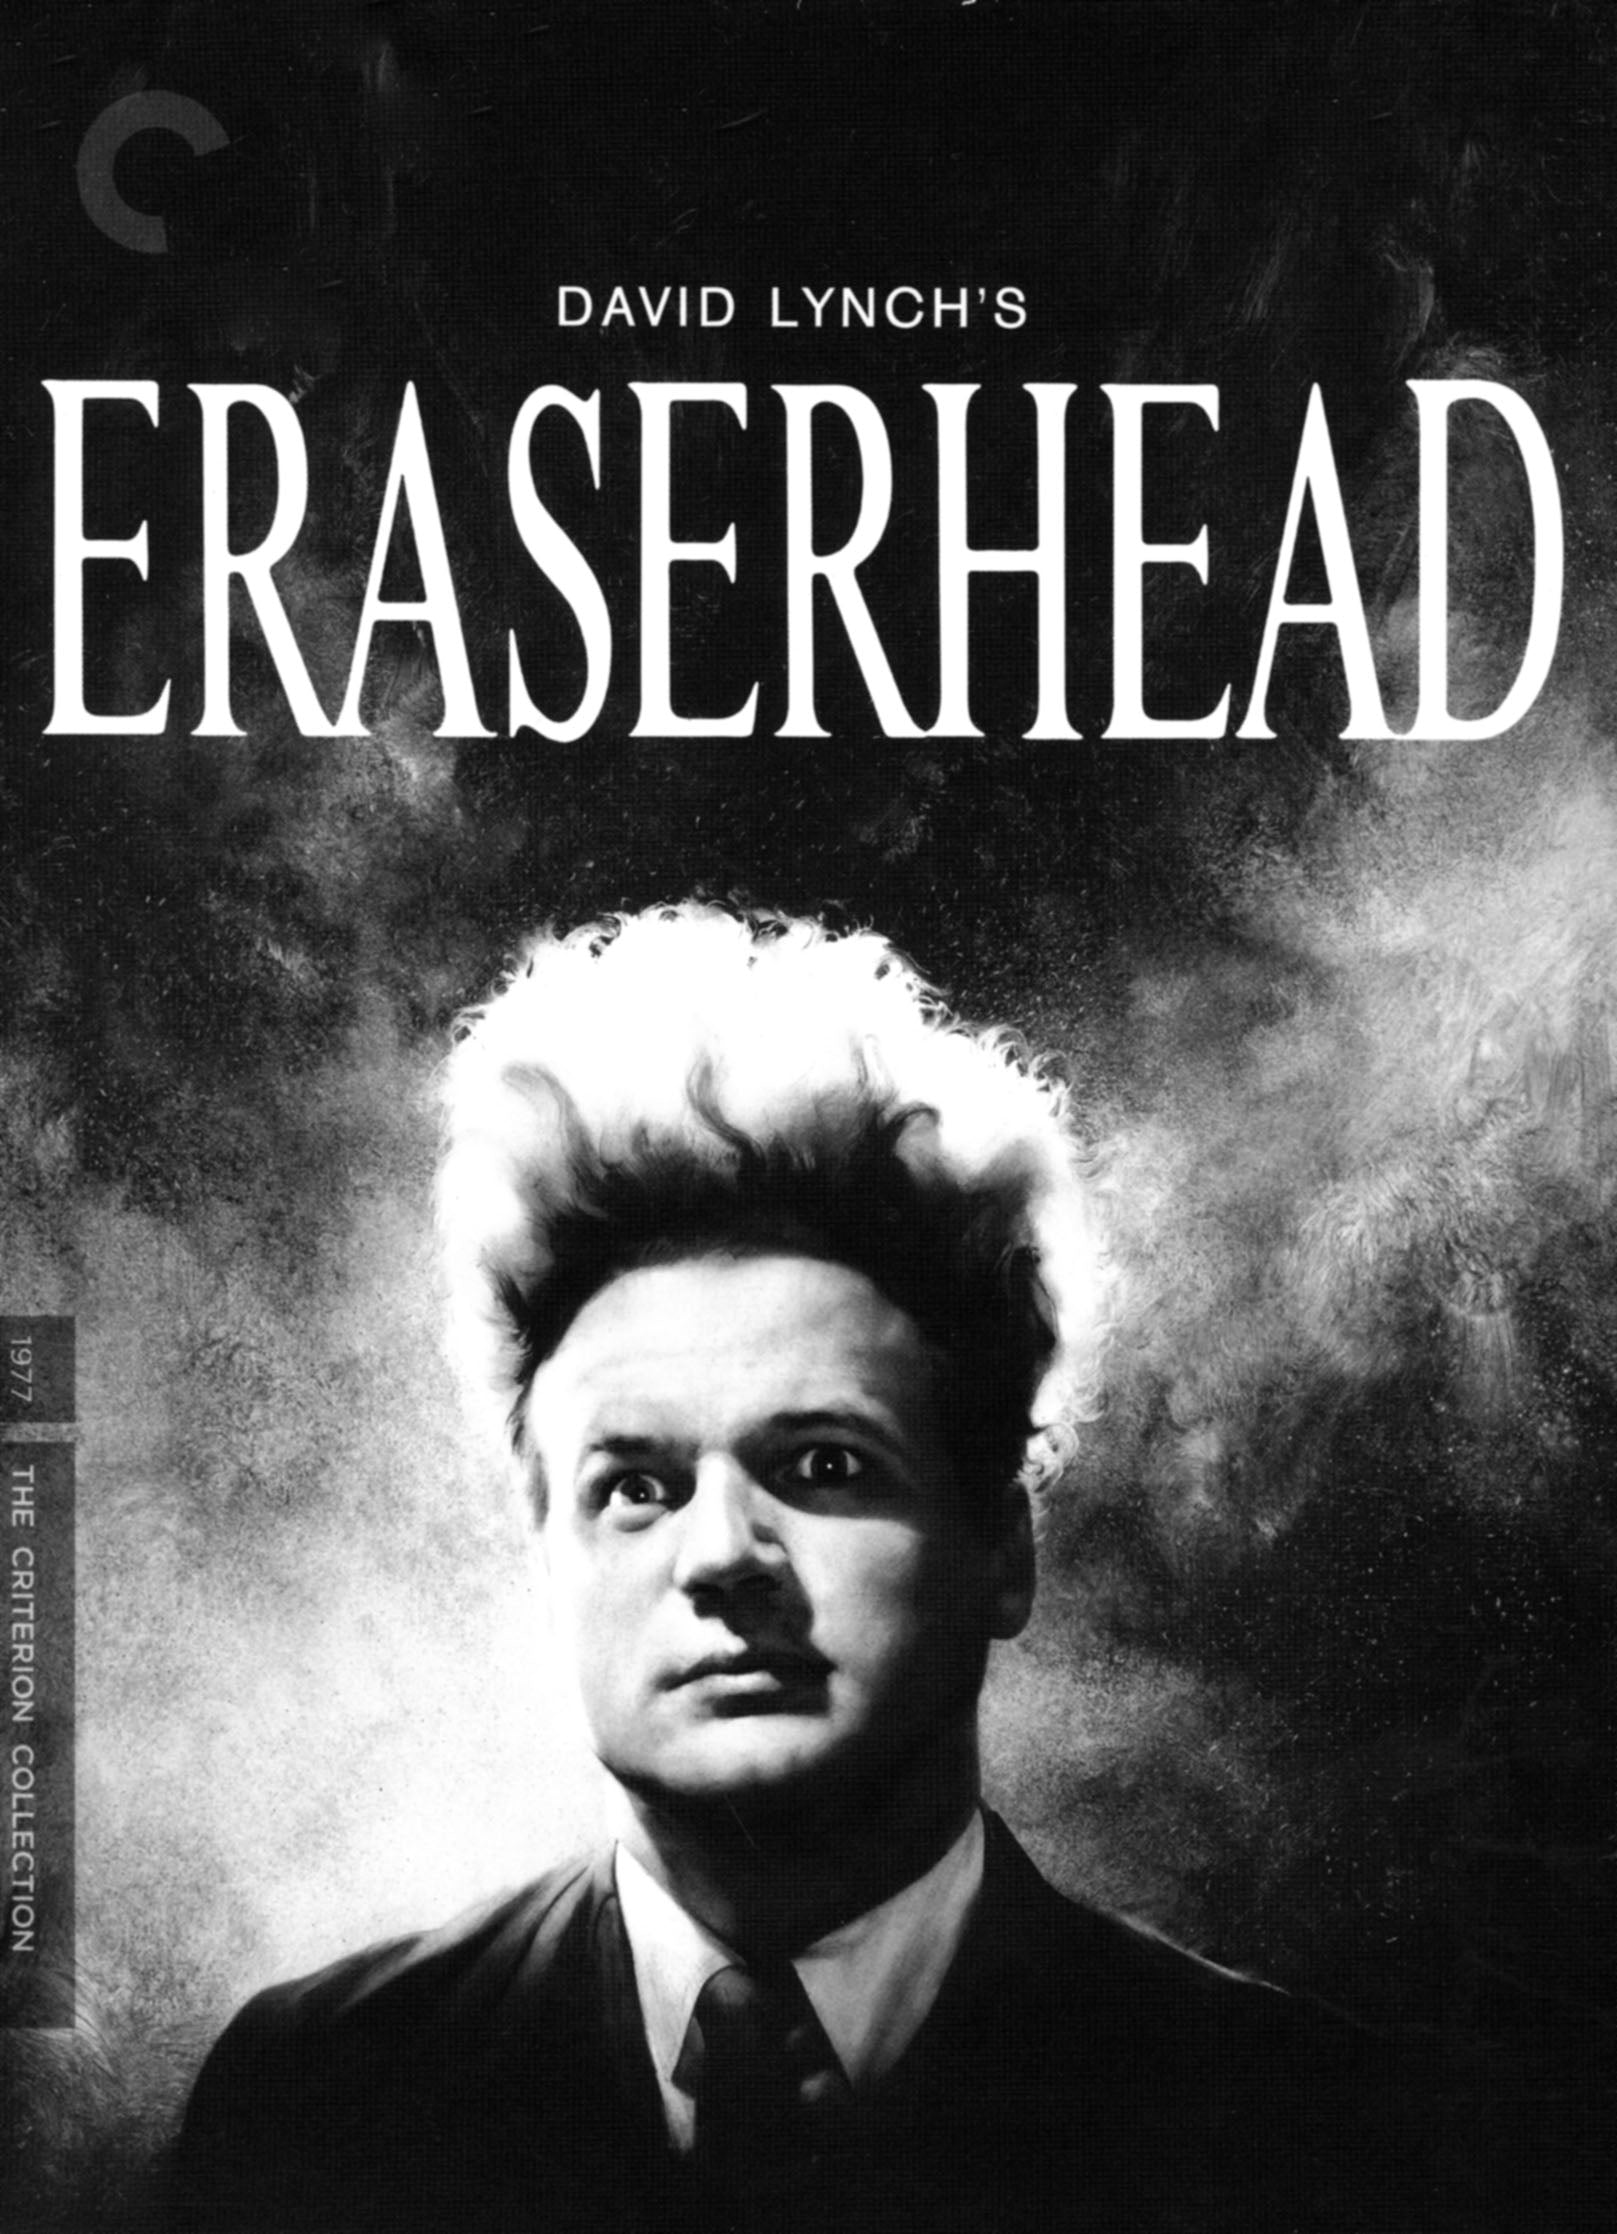 Eraserhead [Criterion Collection] cover art